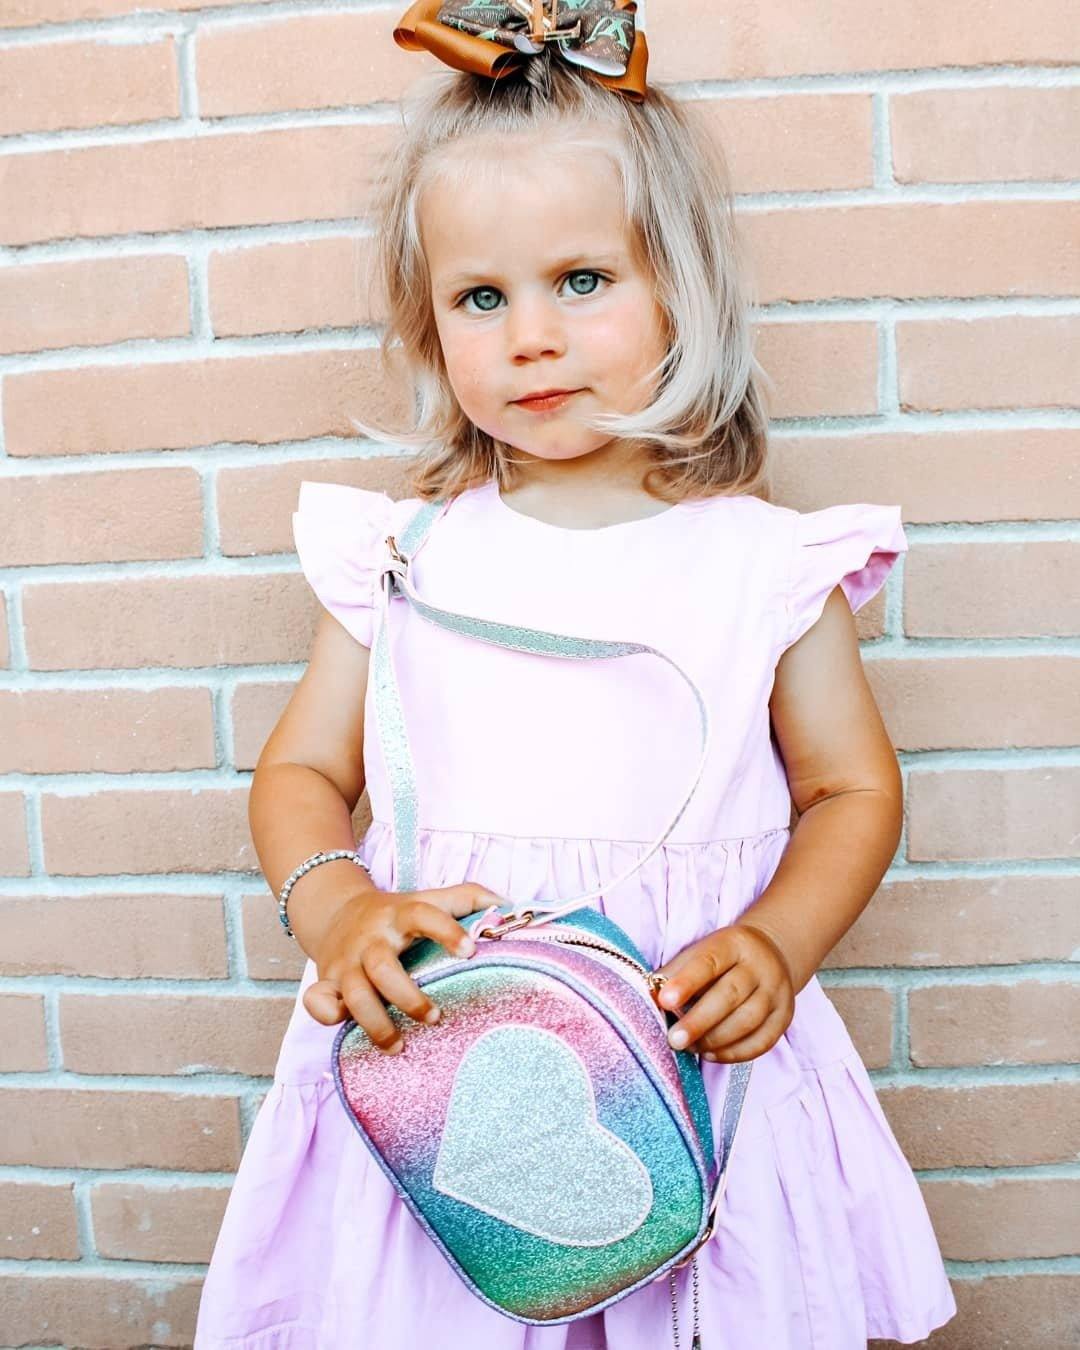 Buy MibasiesKids Glitter Purse for Little Girls Toddler Crossbody